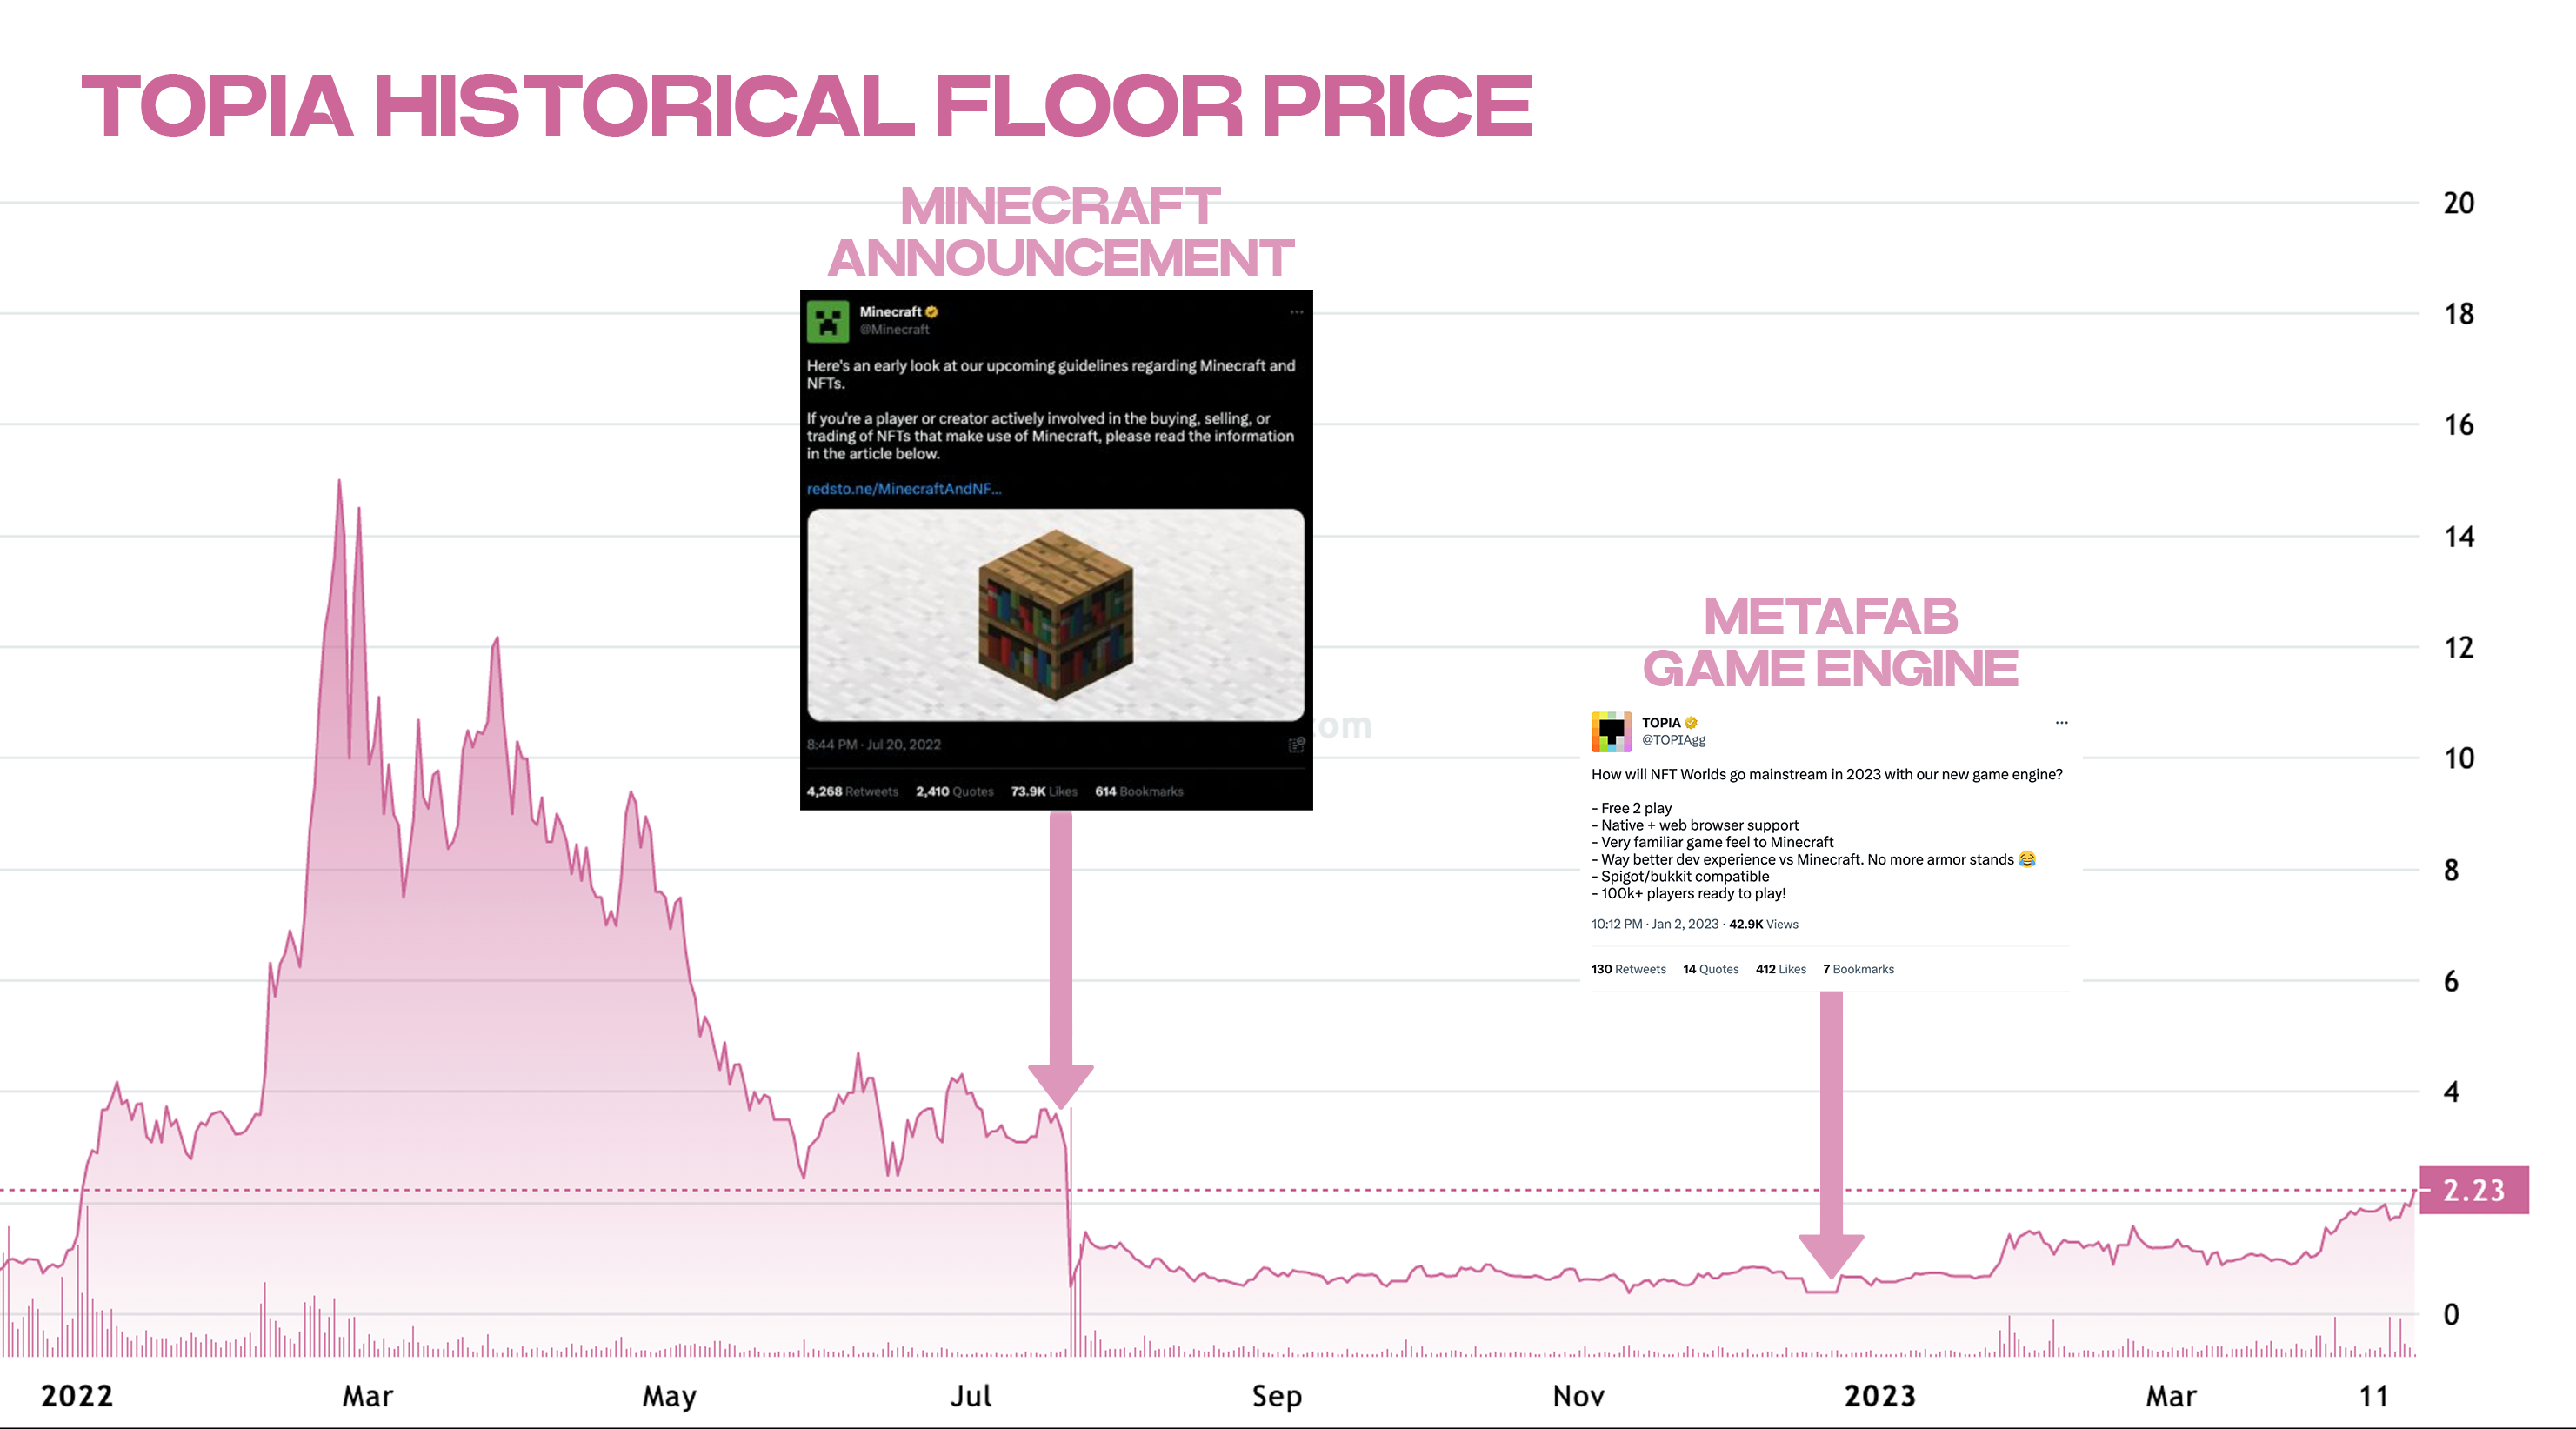 Historical Floor Price of TOPIA, NFT Price Floor